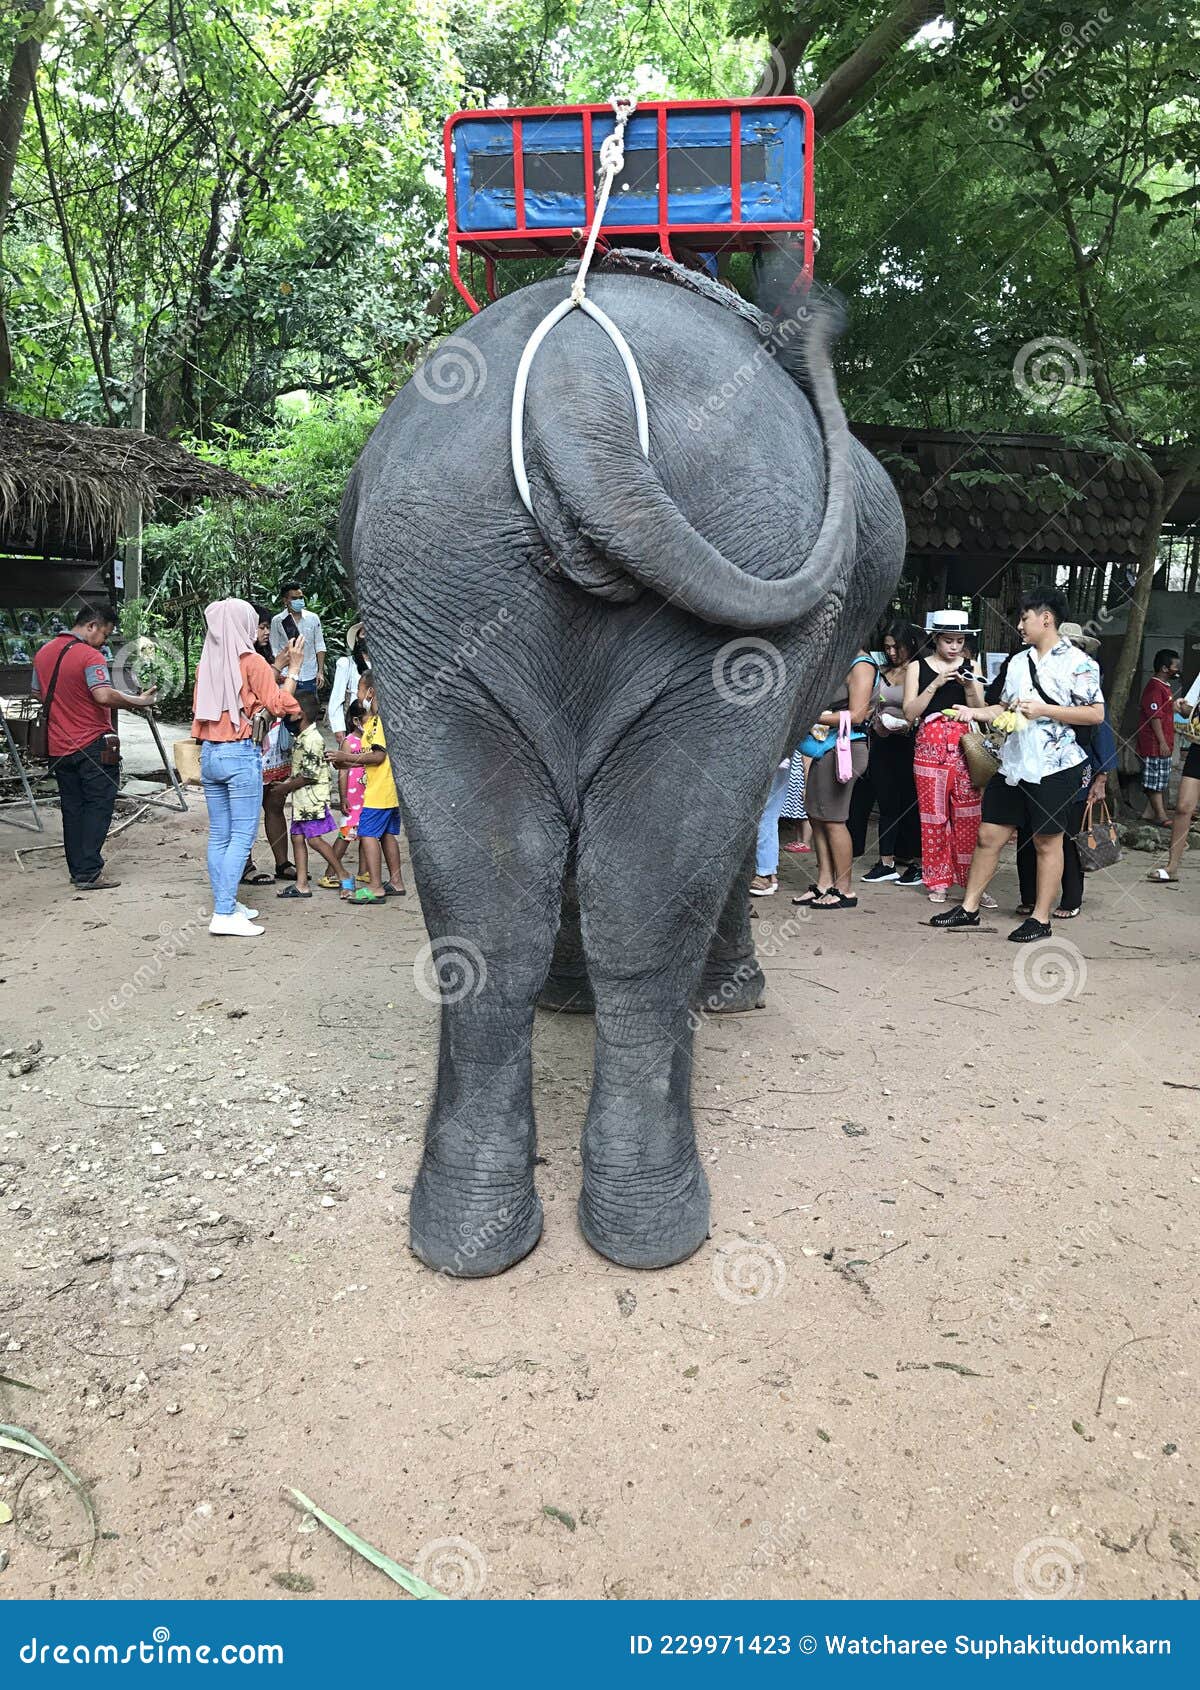 голова человека в жопе у слона фото 111